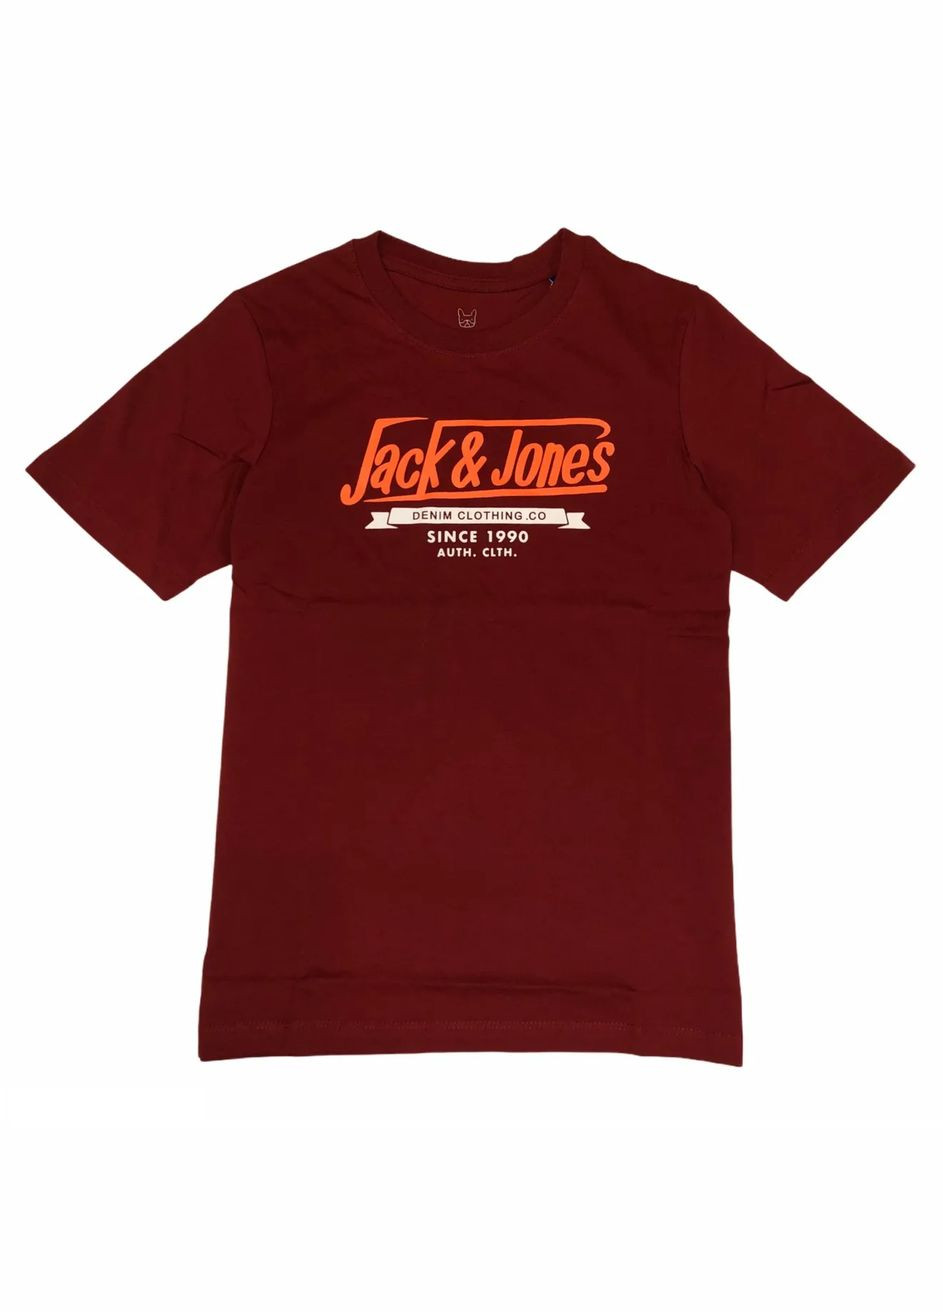 Бордова демісезонна футболка для хлопця 12173882 бордова з оранжевим написом (140 см) Jack & Jones